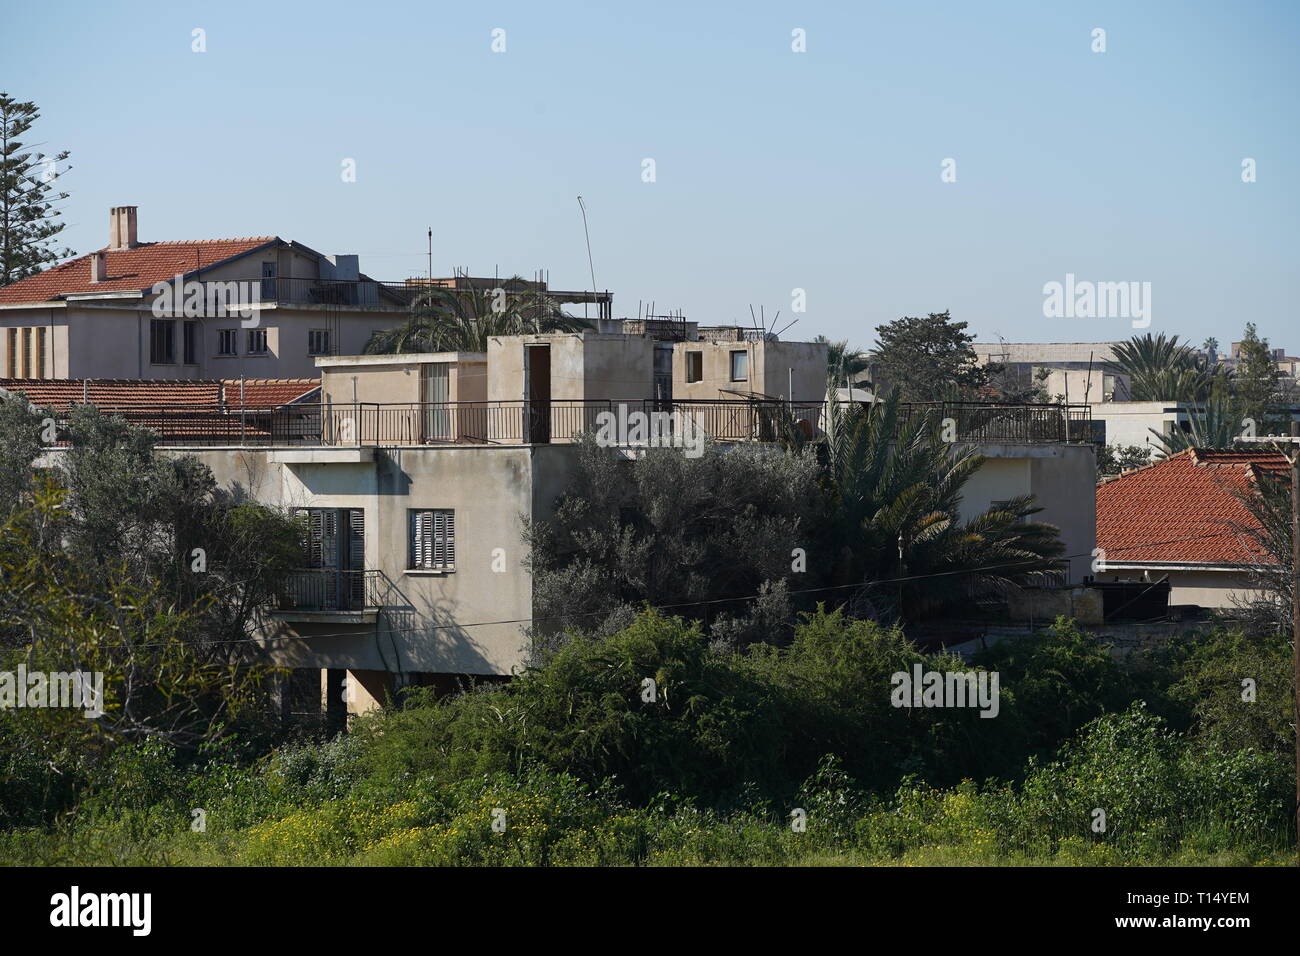 Famagusta (varosha) ist eine verlassene Zyprischen Stadt Famagusta. Vor der Türkischen Invasion 1974 von Zypern, war es die moderne touristische Gegend der Stadt. Stockfoto